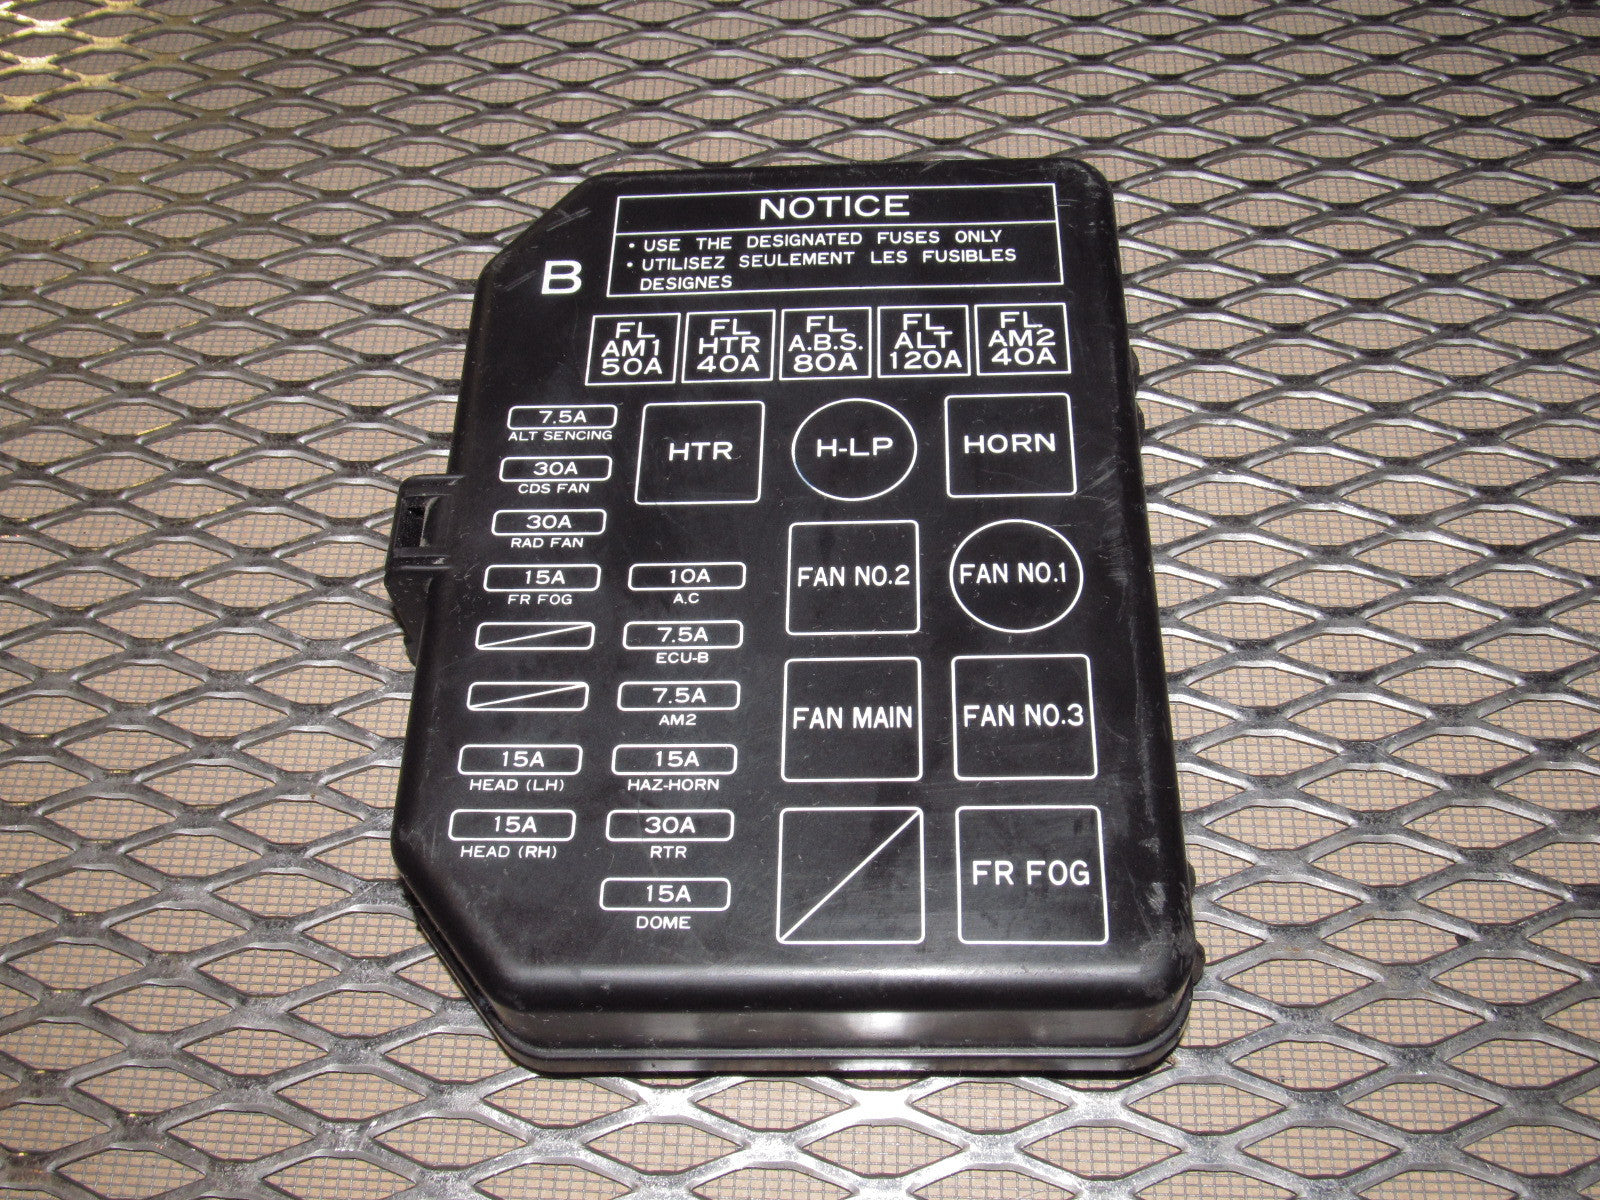 1986 Toyotum Mr2 Fuse Box Number - Wiring Diagram Schema